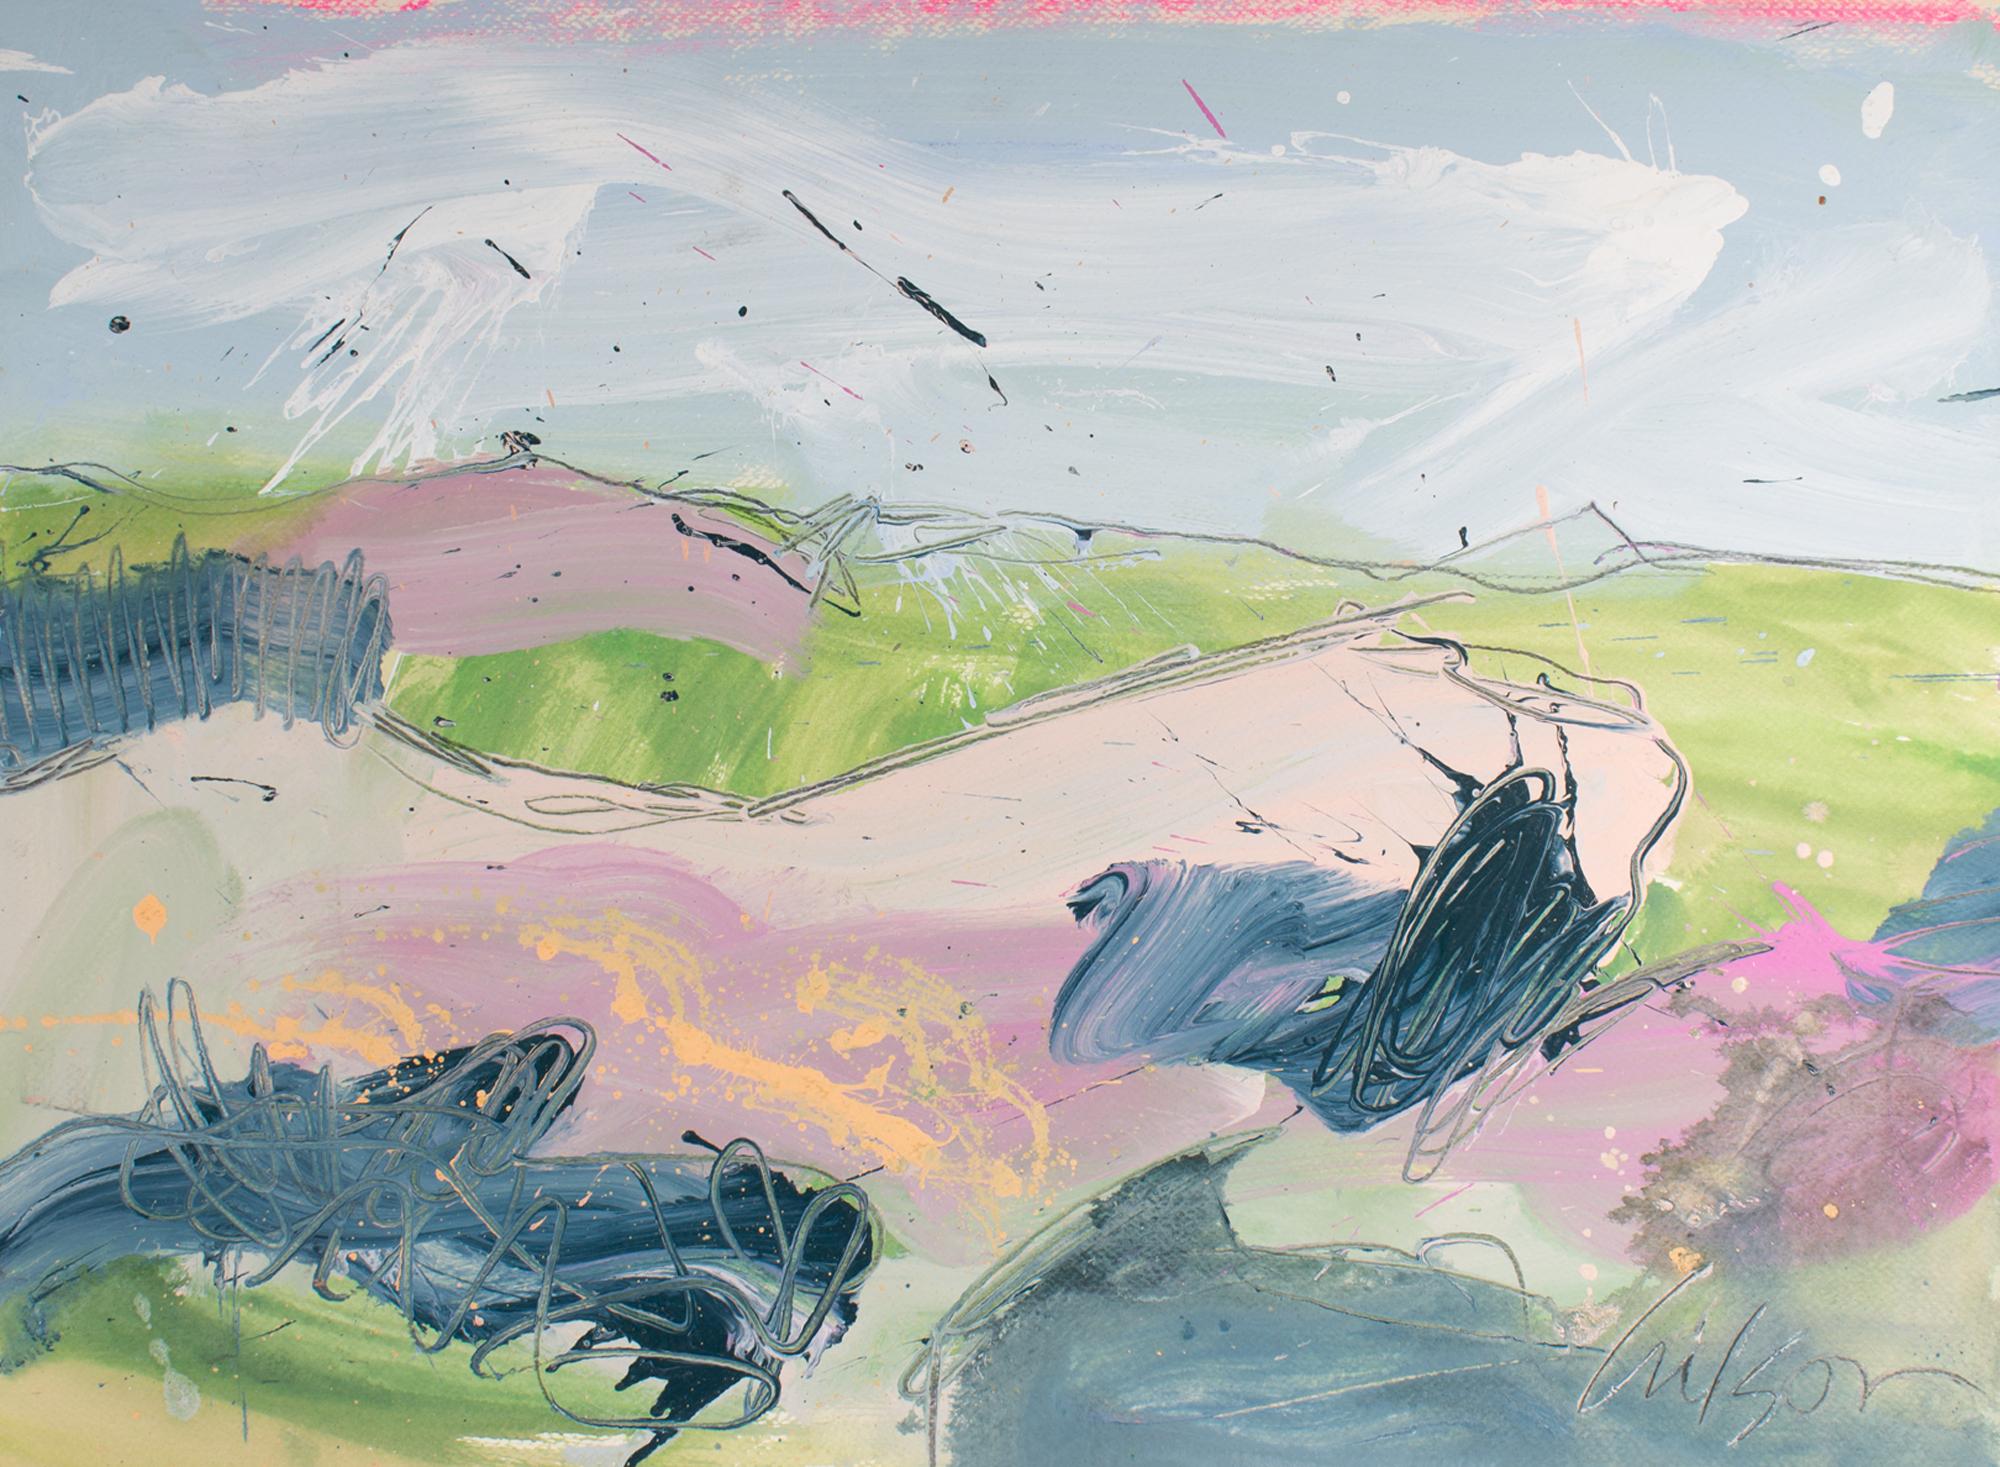 Peinture des années 1980 à l'acrylique et à la gouache sur papier de l'artiste américain Harry Harris (1935-2004). Cette œuvre abstraite représente un paysage peint dans des couleurs pastel avec des collines vertes, roses et bleues sous un ciel bleu